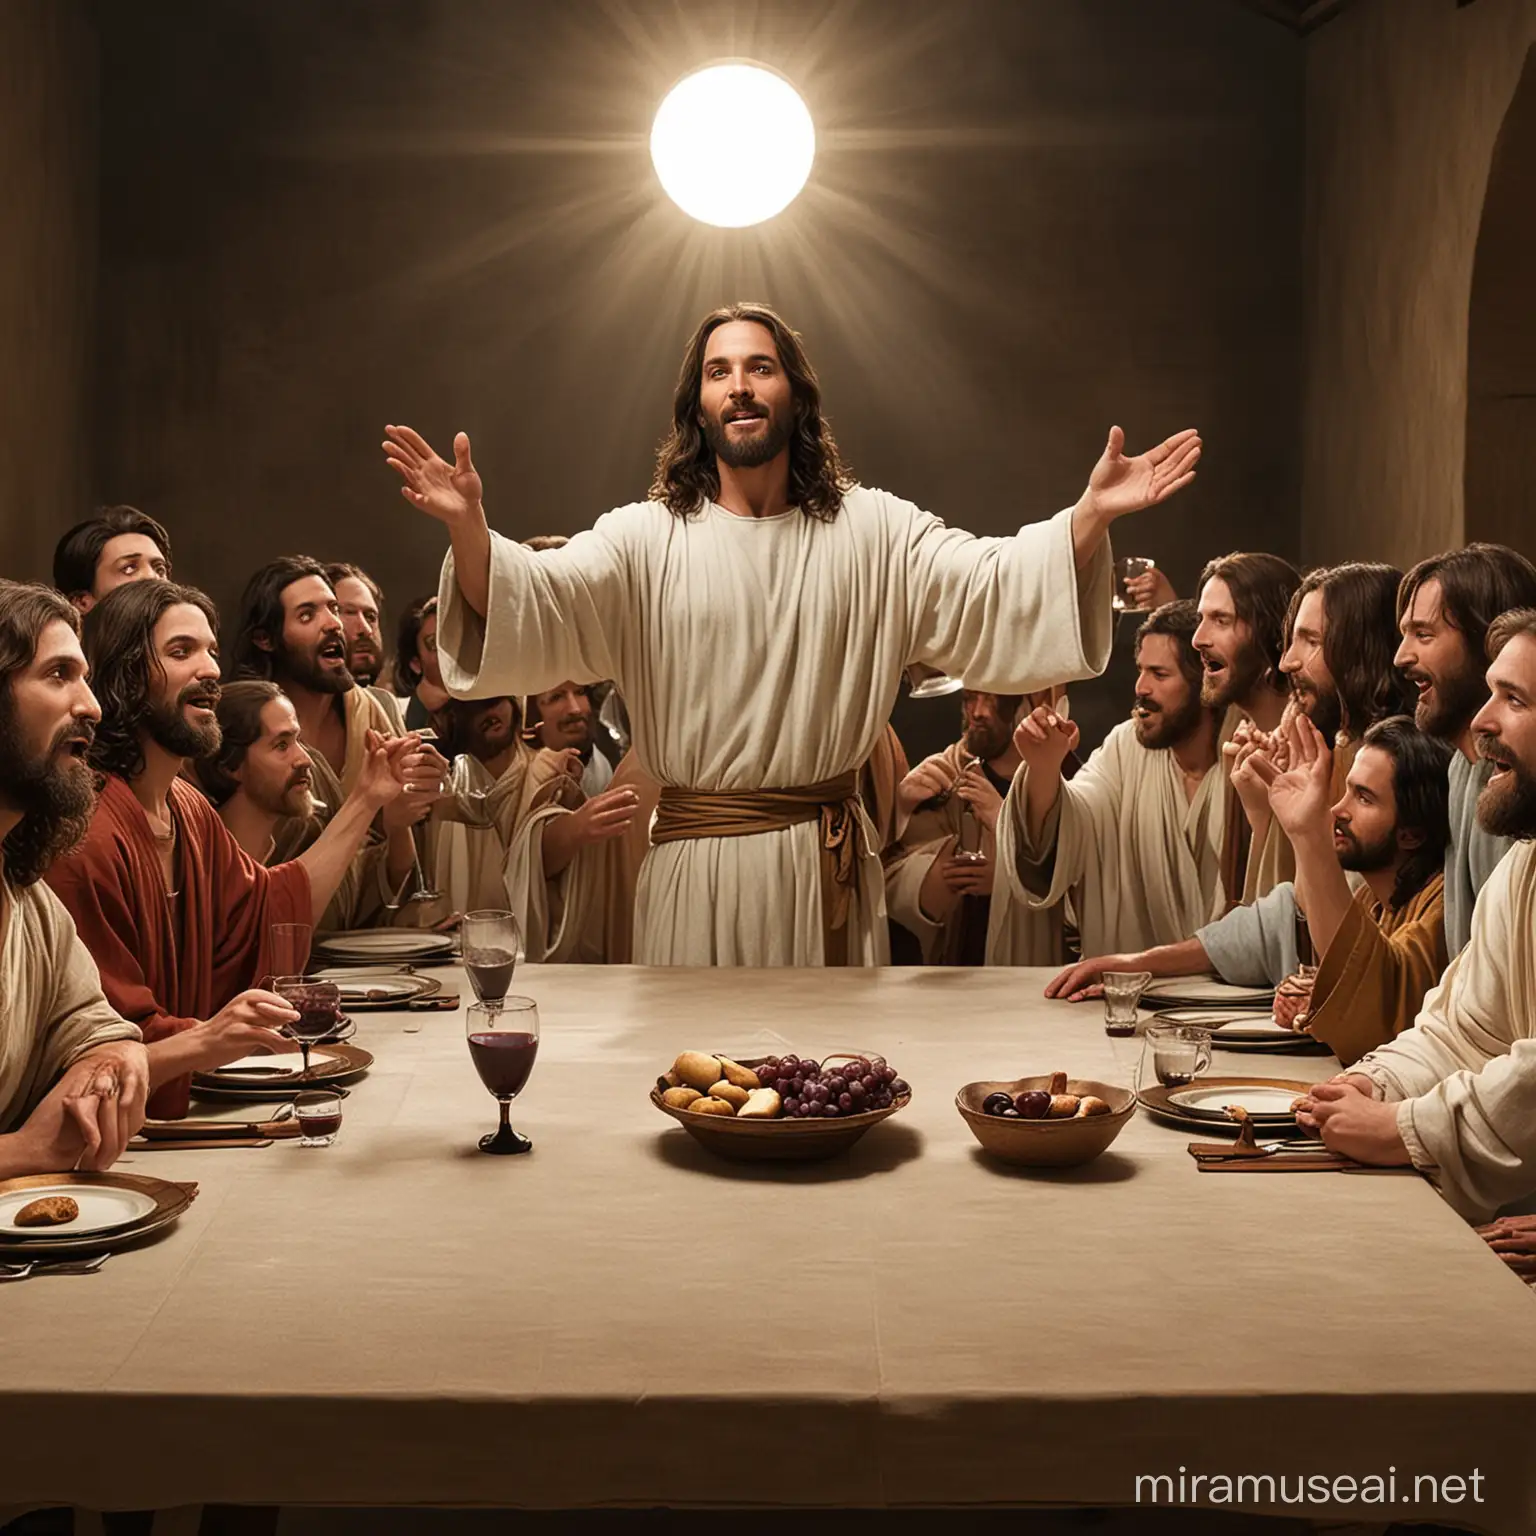 Jesús levantando la copa de vino durante la última cena con sus discípulos